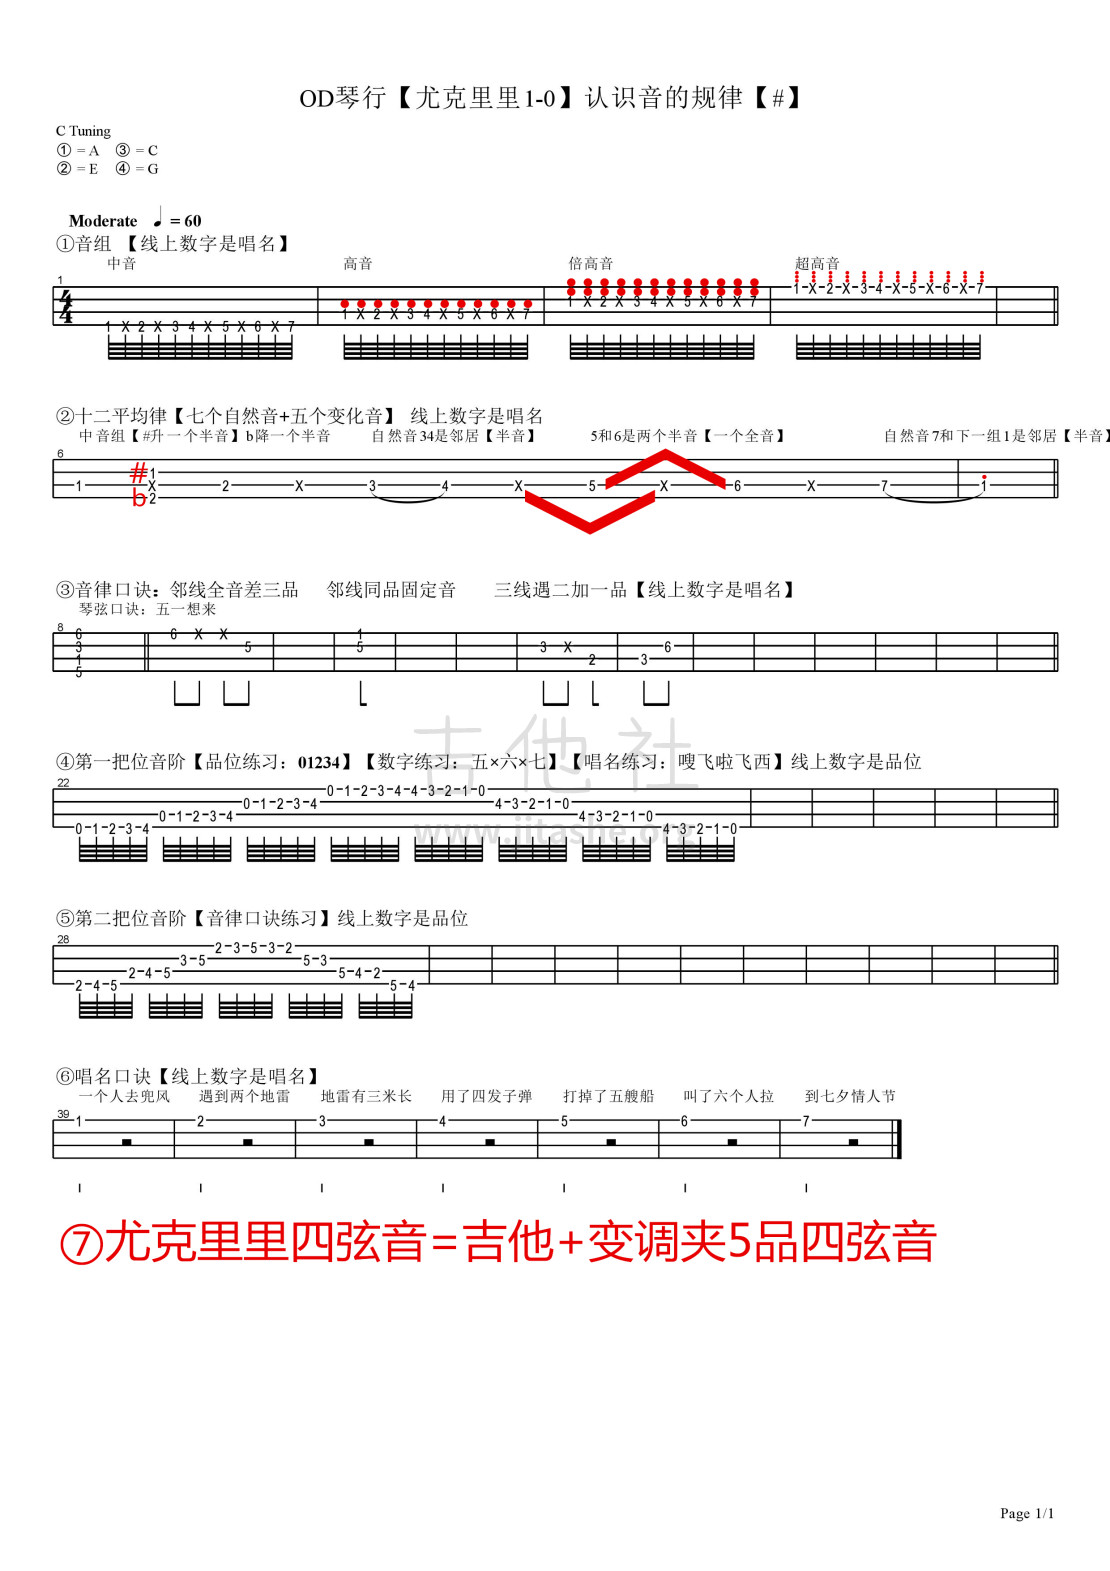 打印:OD琴行【认识音的规律】ukulele教学吉他谱_林一彪_OD琴行【尤克里里1-0】认识音的规律【#】.jpg